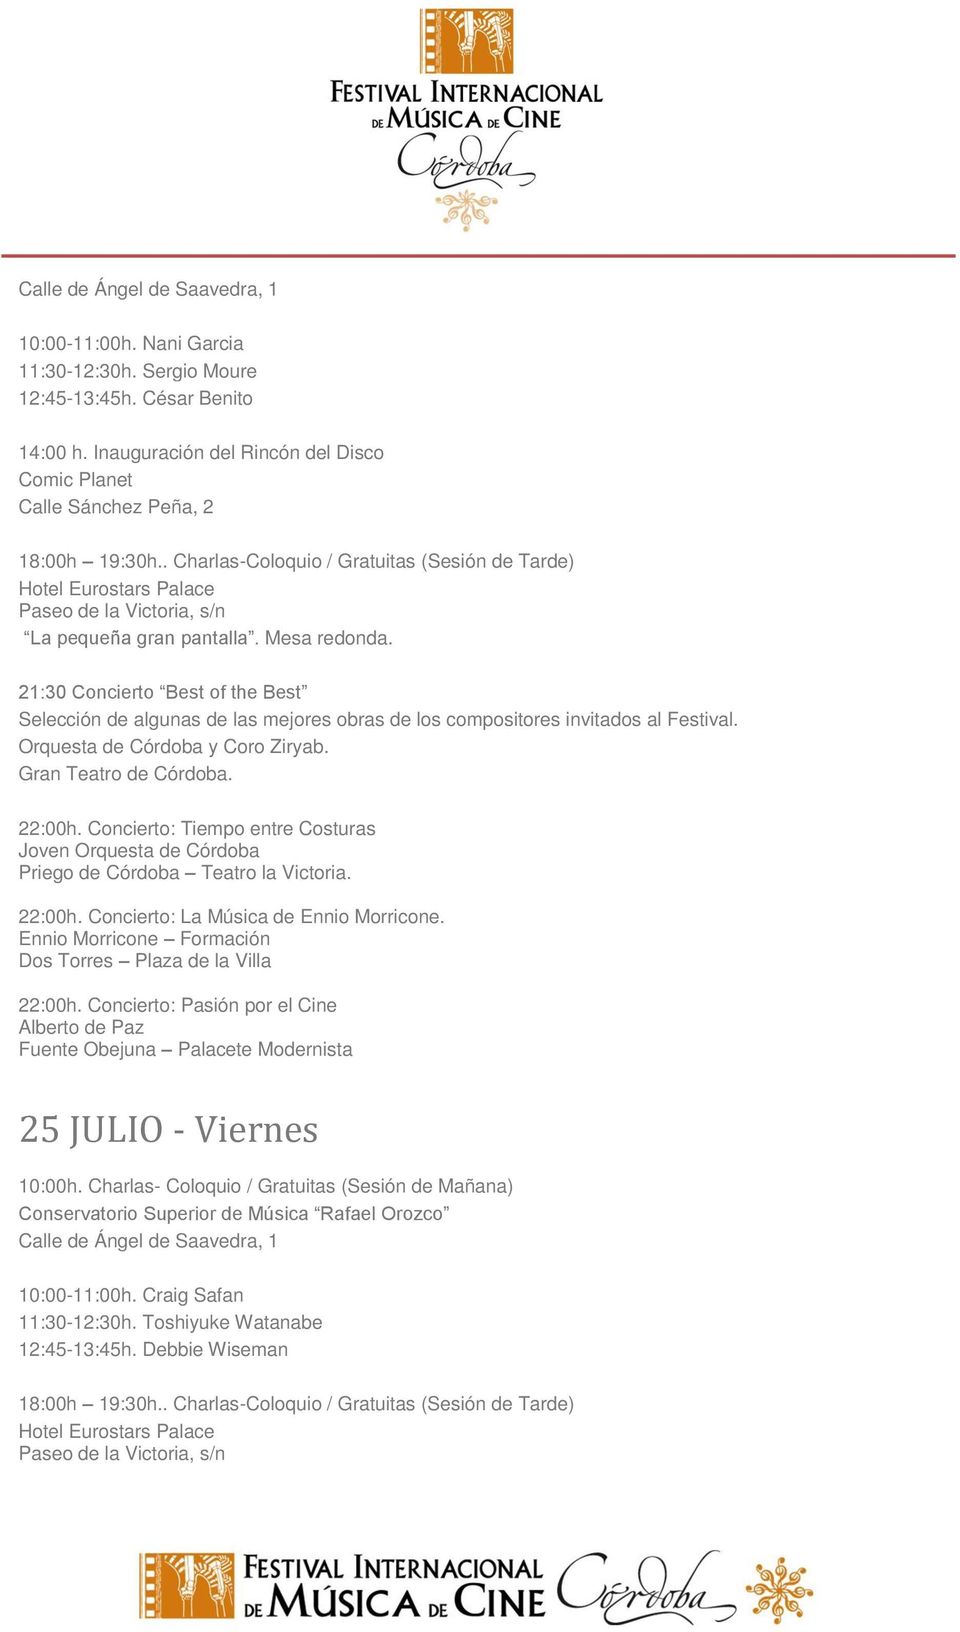 Concierto: Tiempo entre Costuras Joven Orquesta de Córdoba Priego de Córdoba Teatro la Victoria. 22:00h. Concierto: La Música de Ennio Morricone.